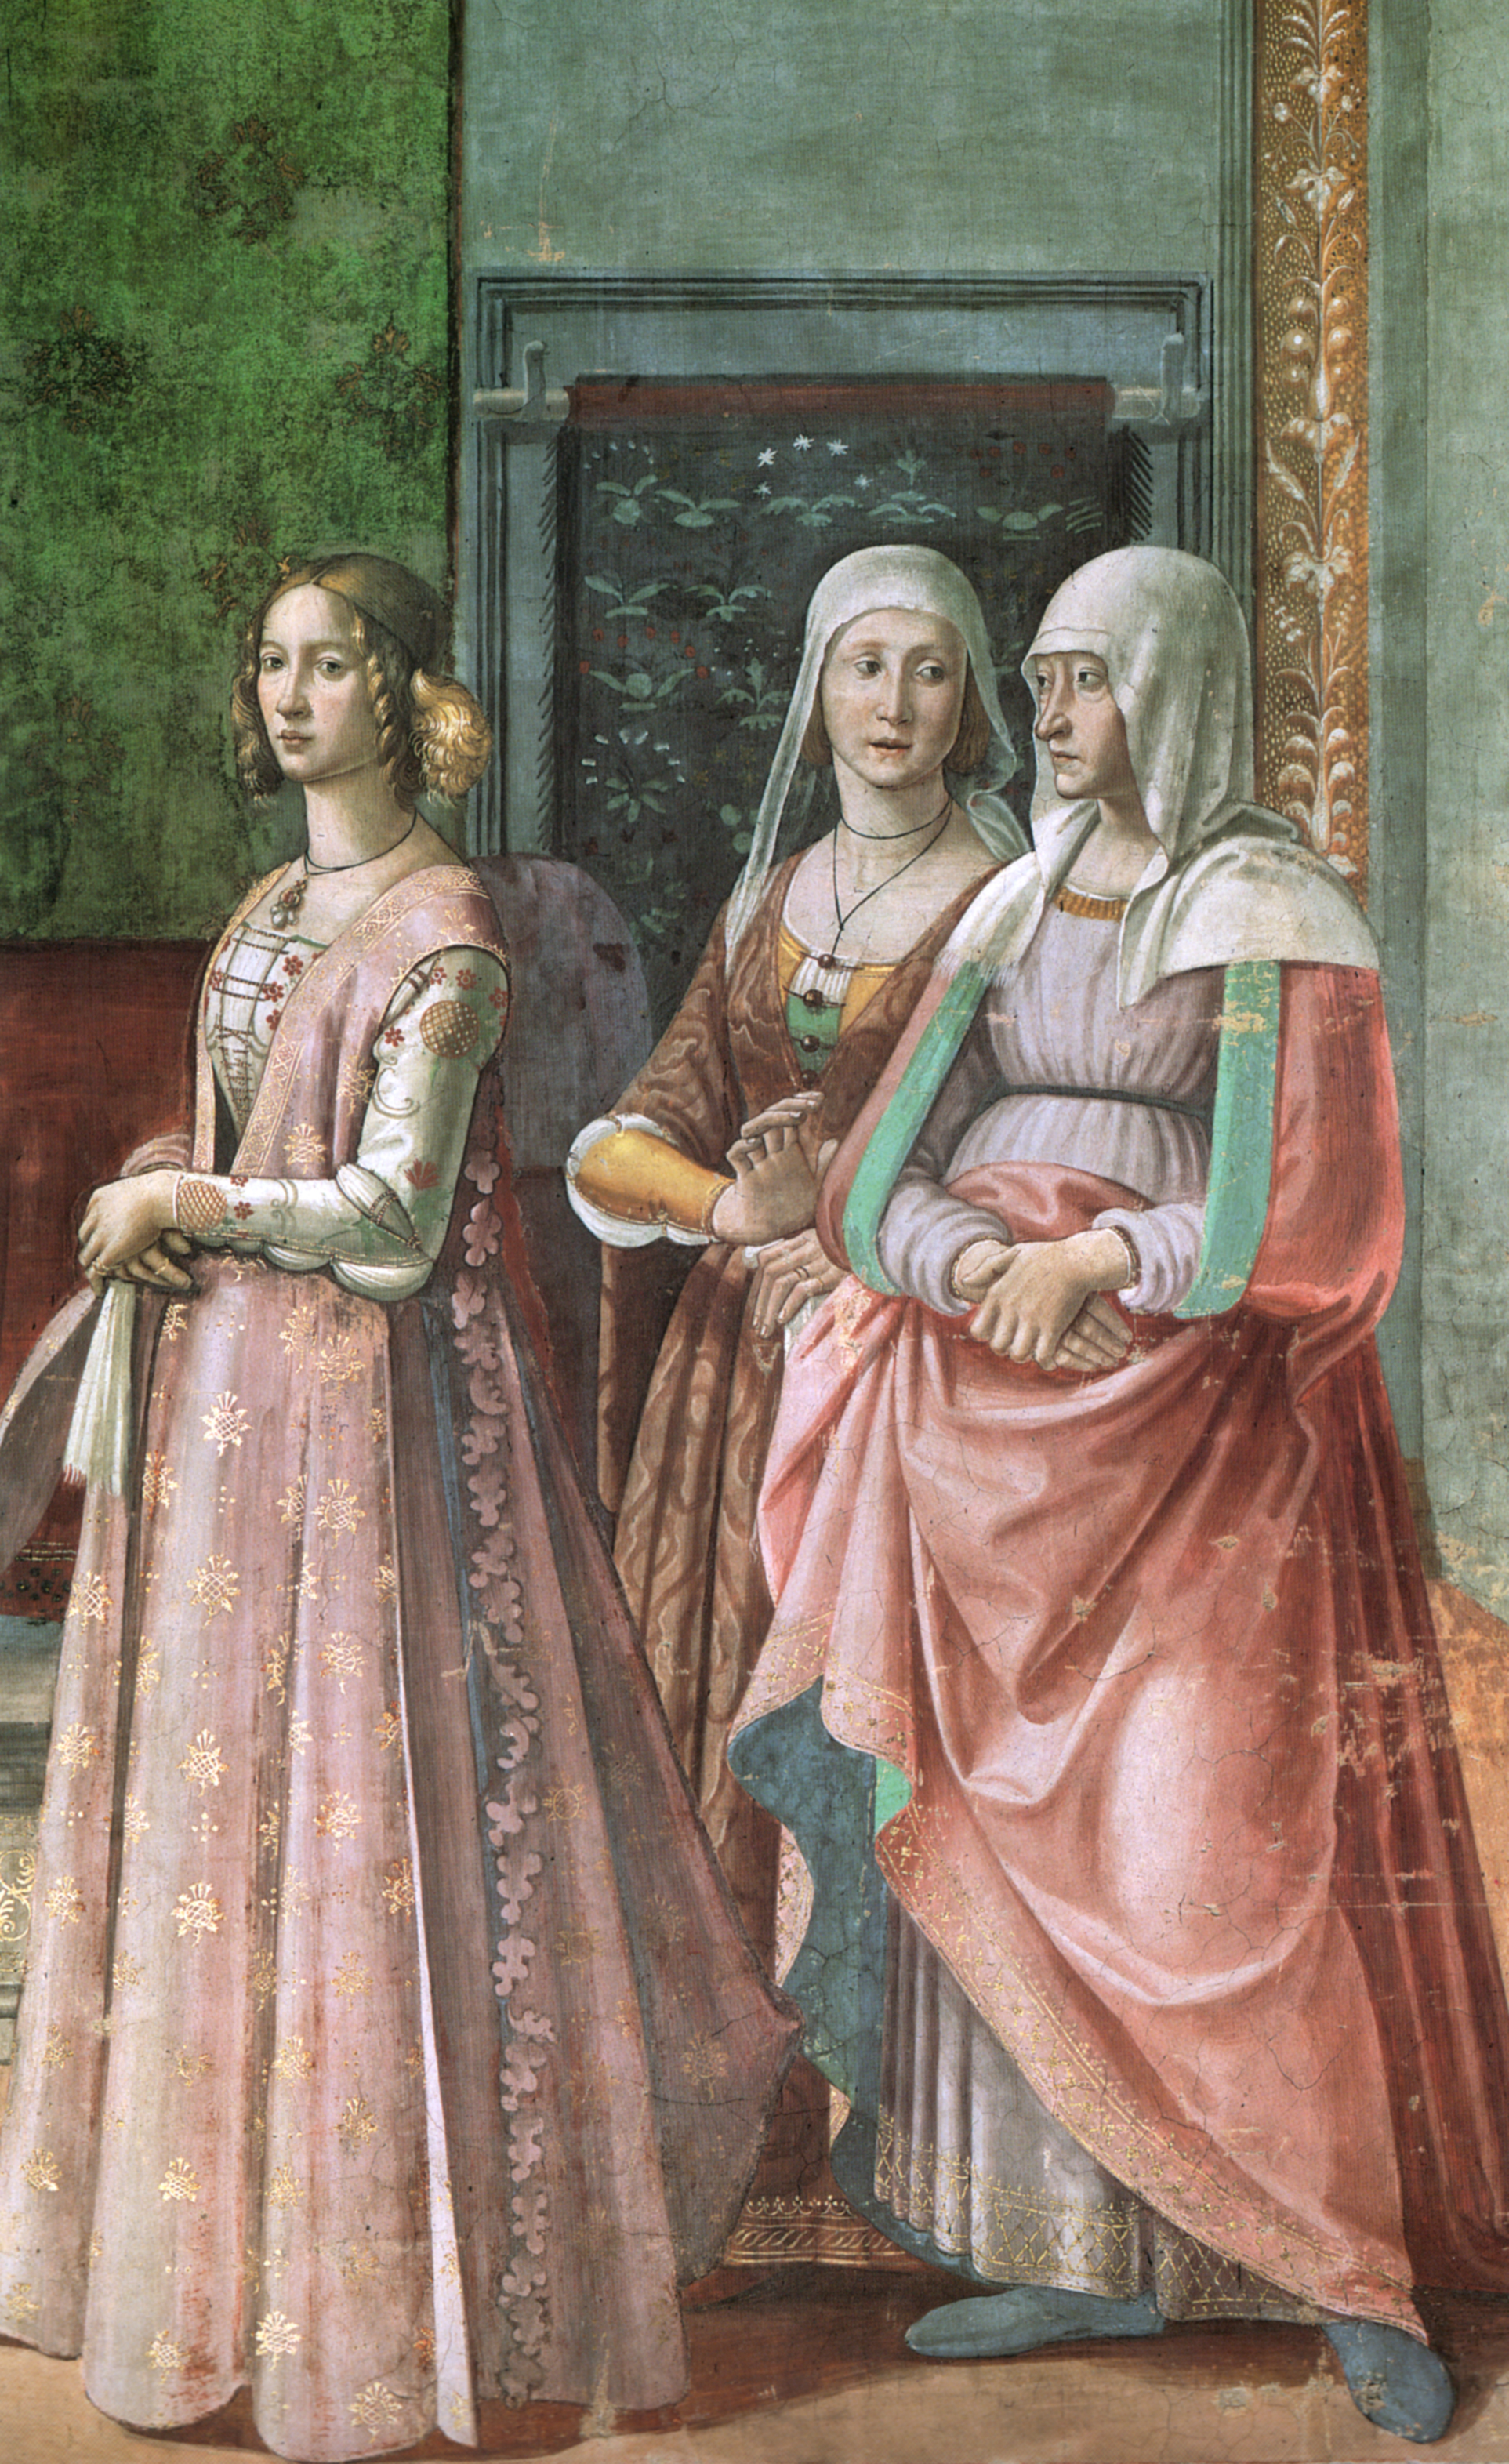 Probabile ritratto di Lucrezia Tornabuoni negli affreschi del Ghirlandaio nella cappella Tornabuoni a Santa Maria Novella. Immagine in pubblico dominio, fonte: Wikimedia Commons